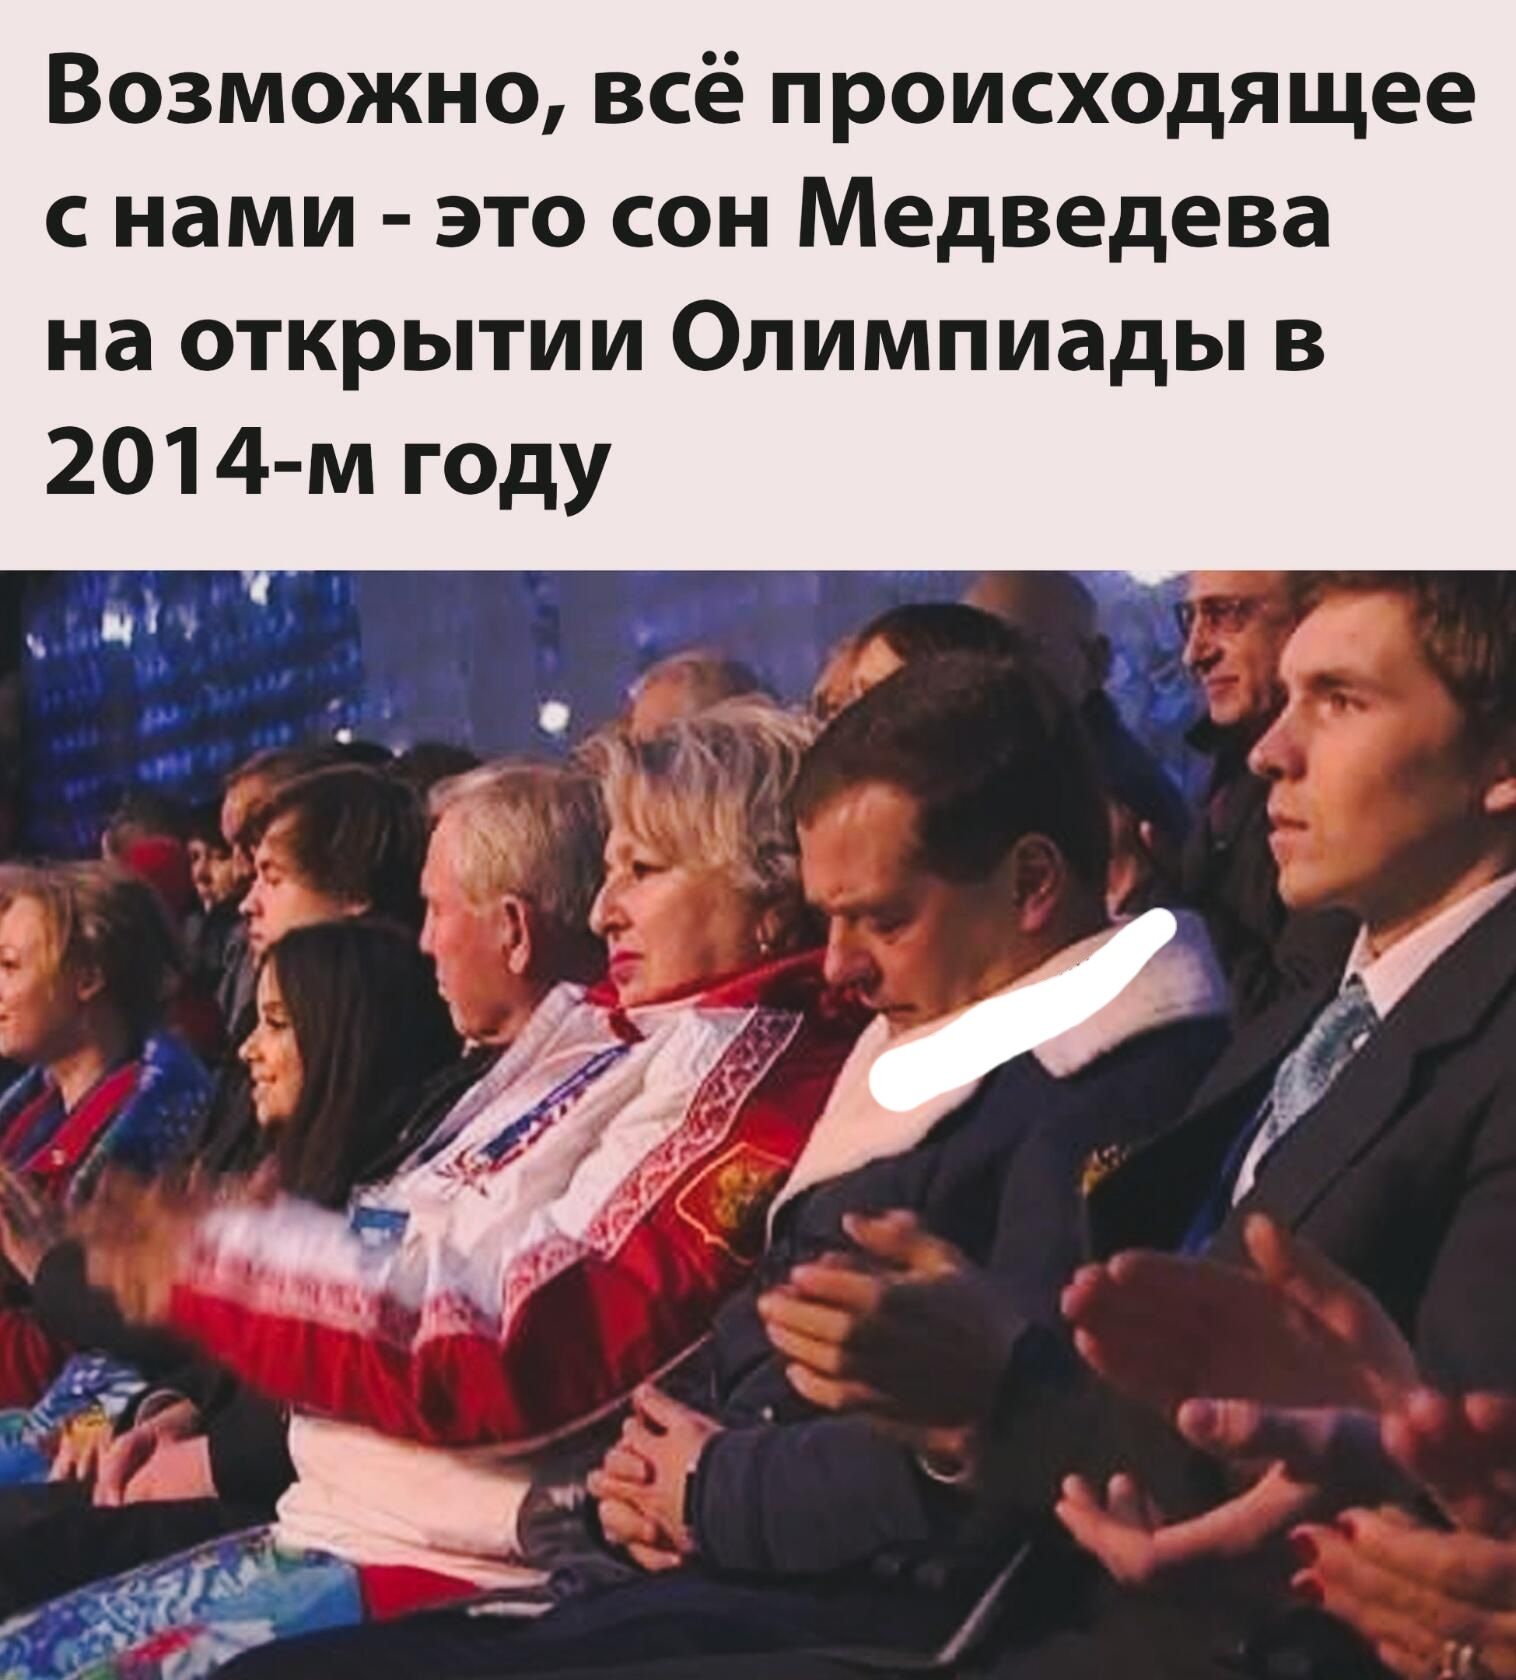 Возможно всё происходящее с нами это сон Медведева на открытии Олимпиады в 2014 м году